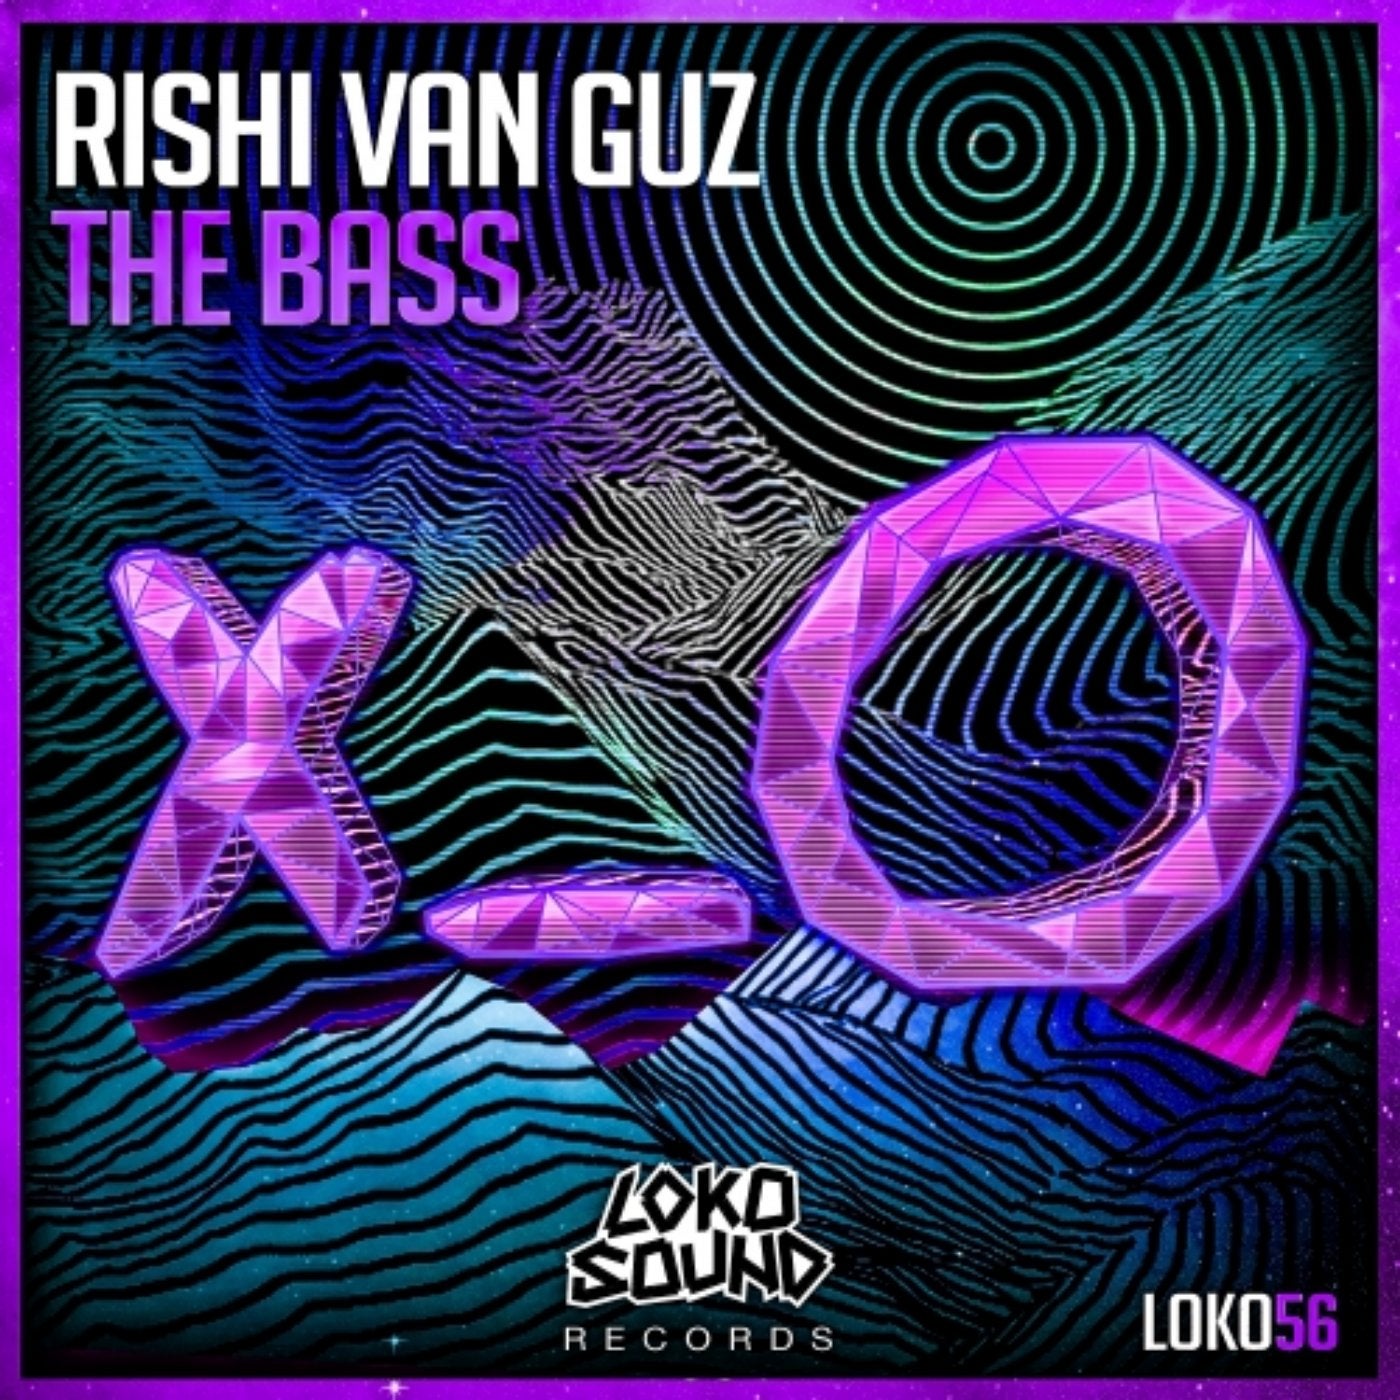 The Bass